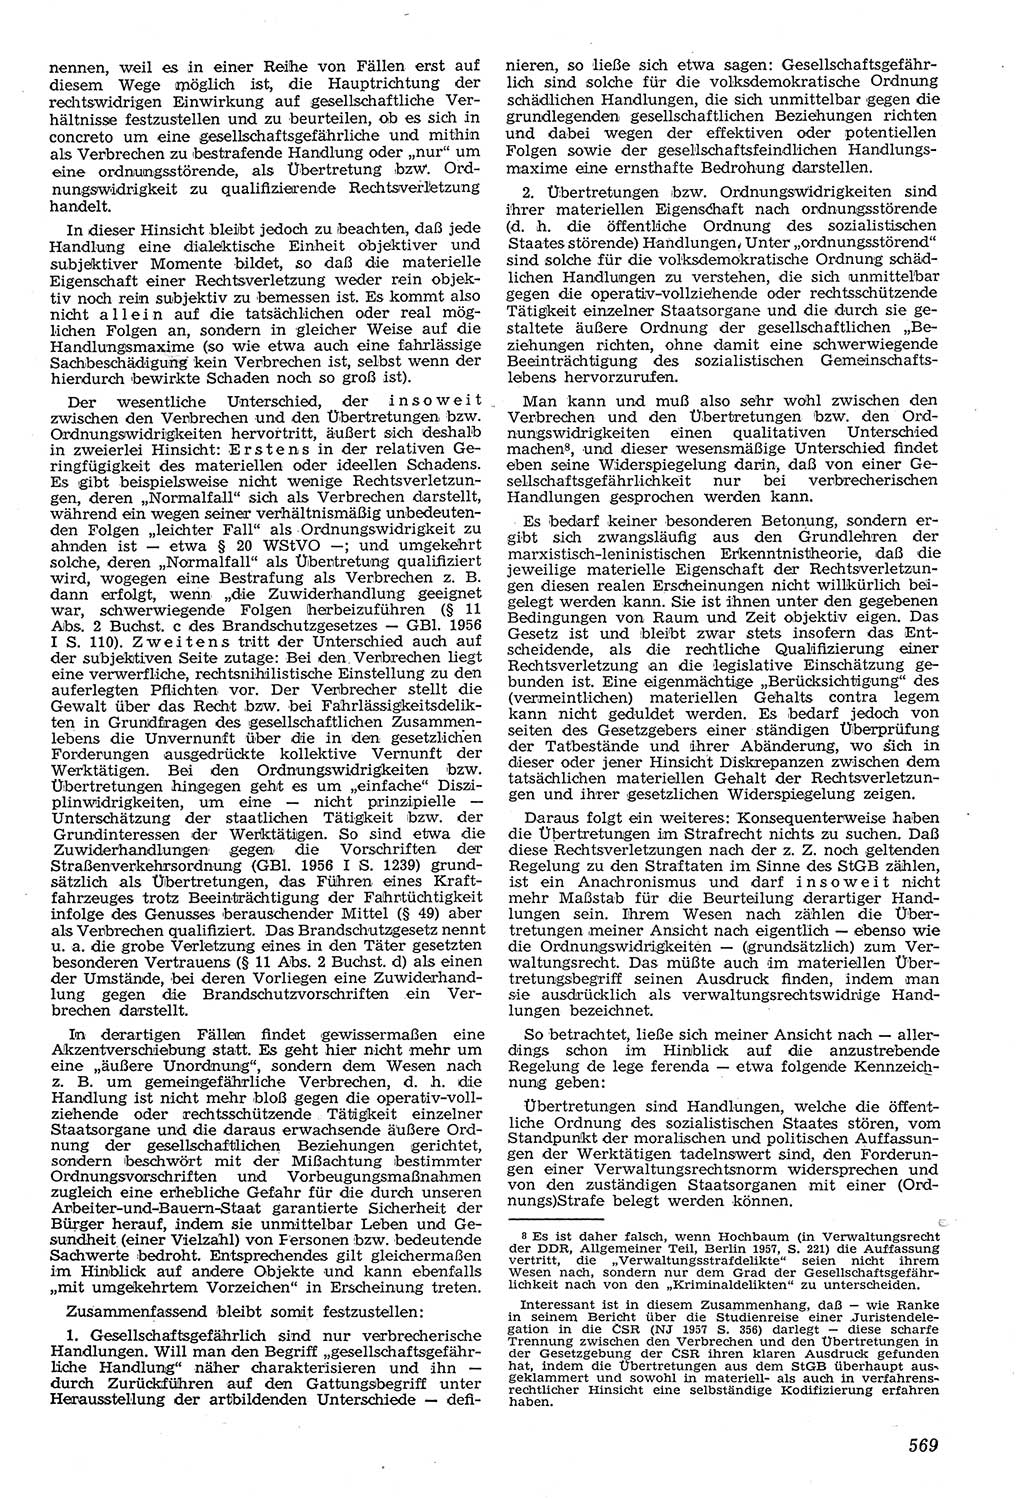 Neue Justiz (NJ), Zeitschrift für Recht und Rechtswissenschaft [Deutsche Demokratische Republik (DDR)], 11. Jahrgang 1957, Seite 569 (NJ DDR 1957, S. 569)